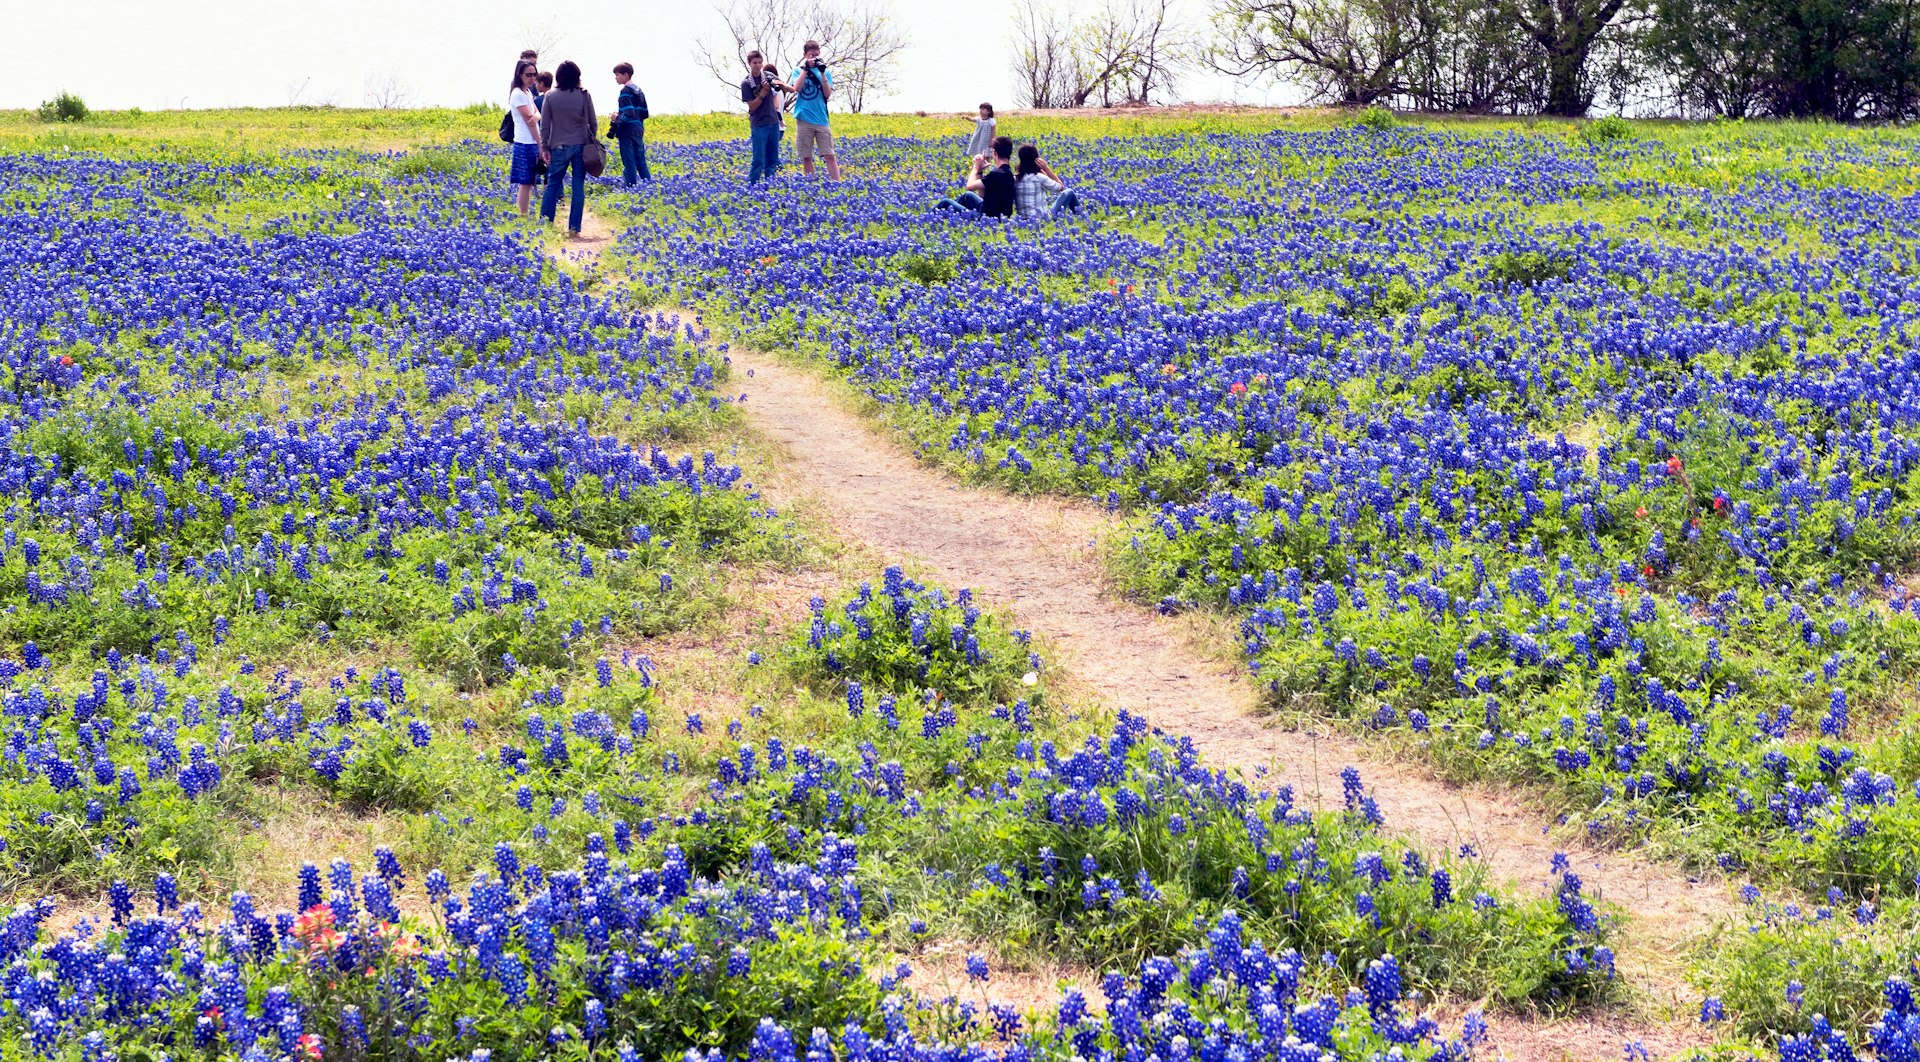 People walk through fields of bluebonnet flowers in Ennis, Texas, USA